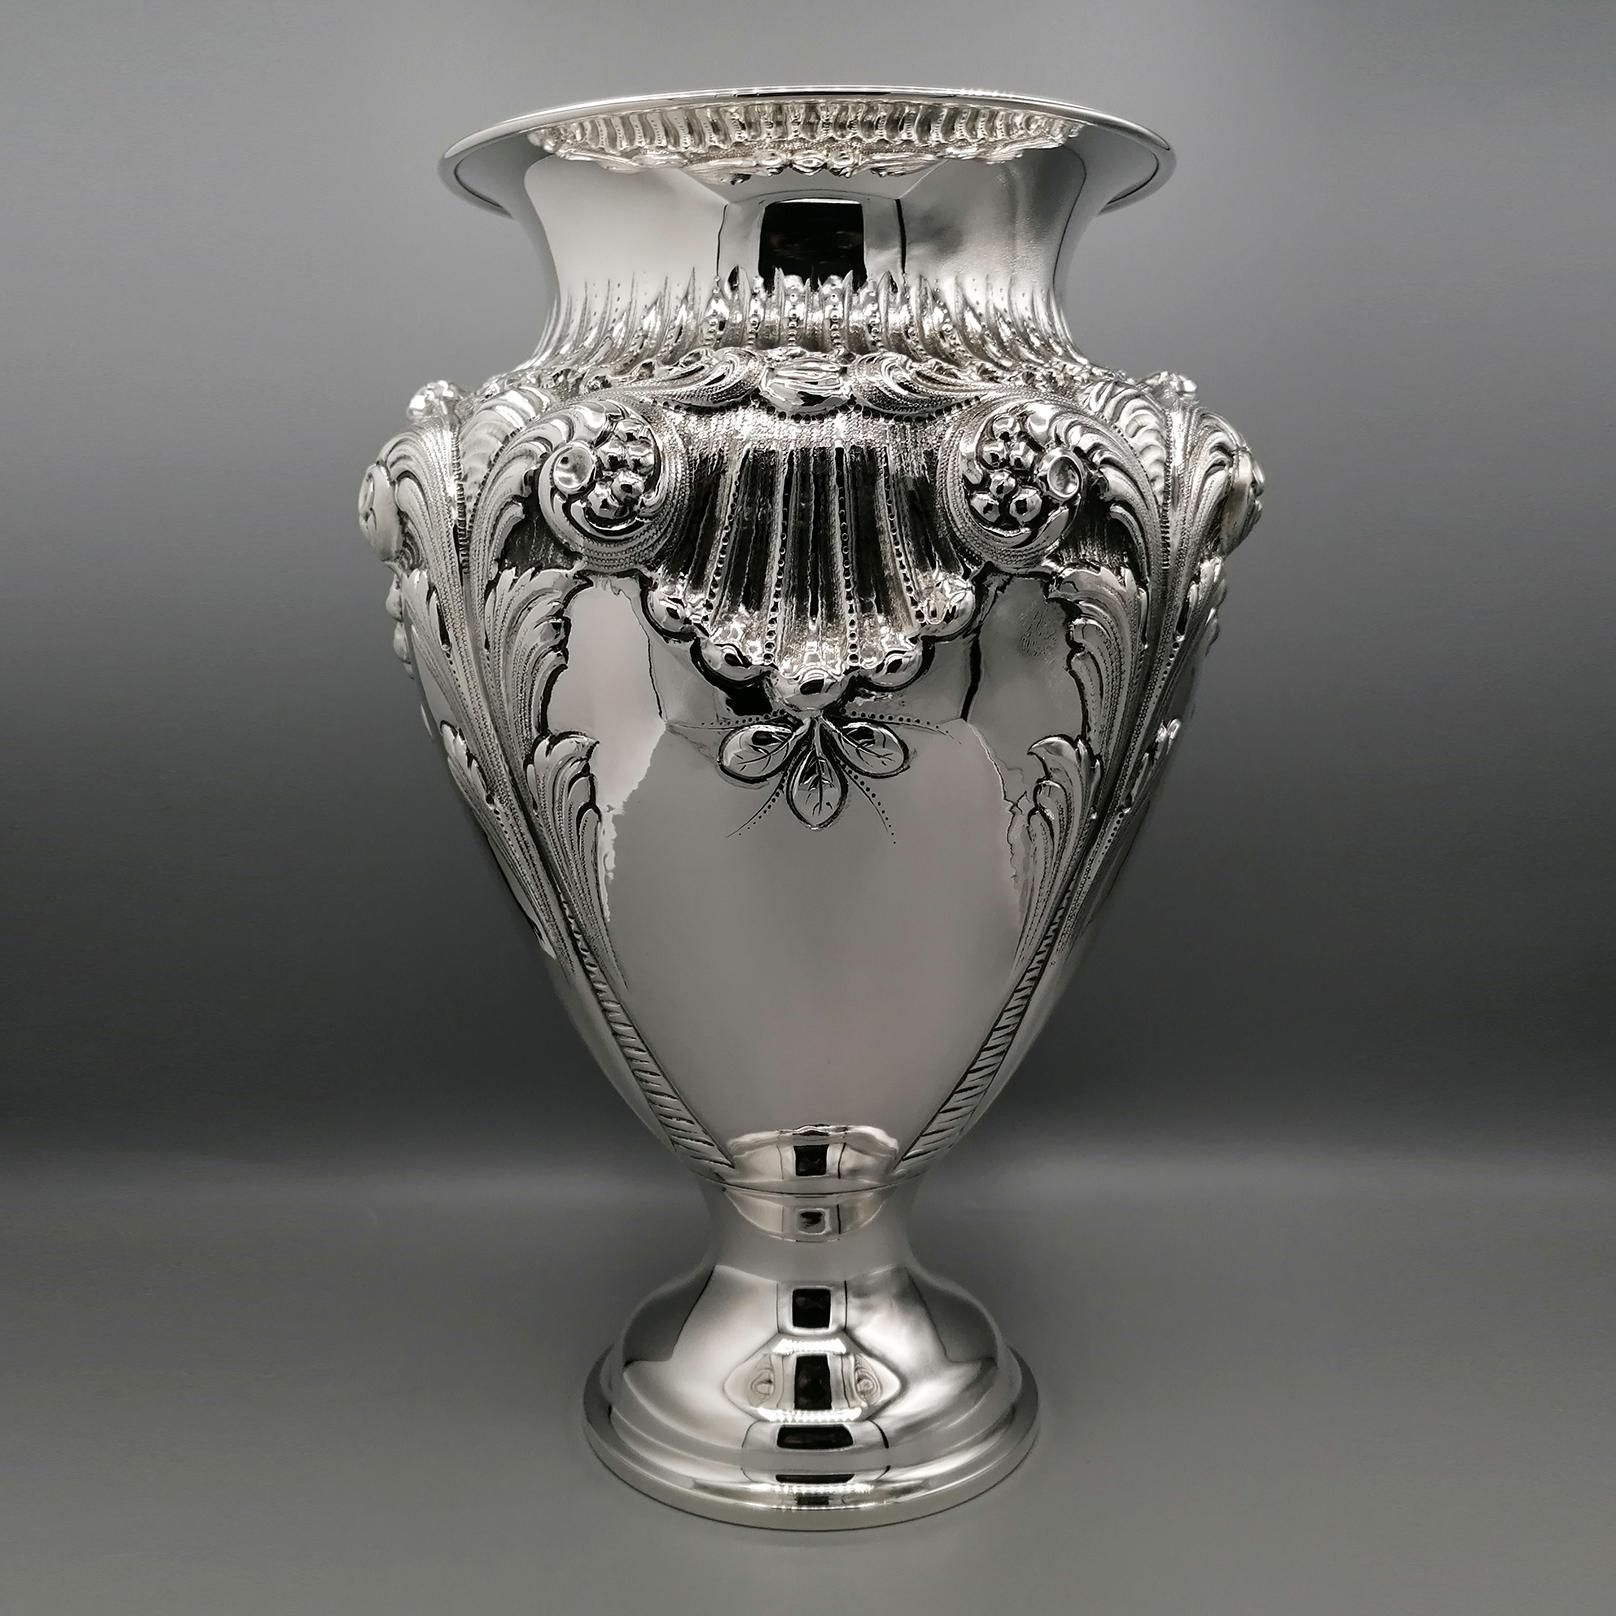 Große Vase aus Sterlingsilber im Barockstil.
Der Körper der Vase ist meisterhaft mit Muscheln, Blumen und Voluten geprägt, typisch für den Barockstil.
Im Korpus der Vase wurden einige Teile glänzend belassen, um die großartigen Präge- und